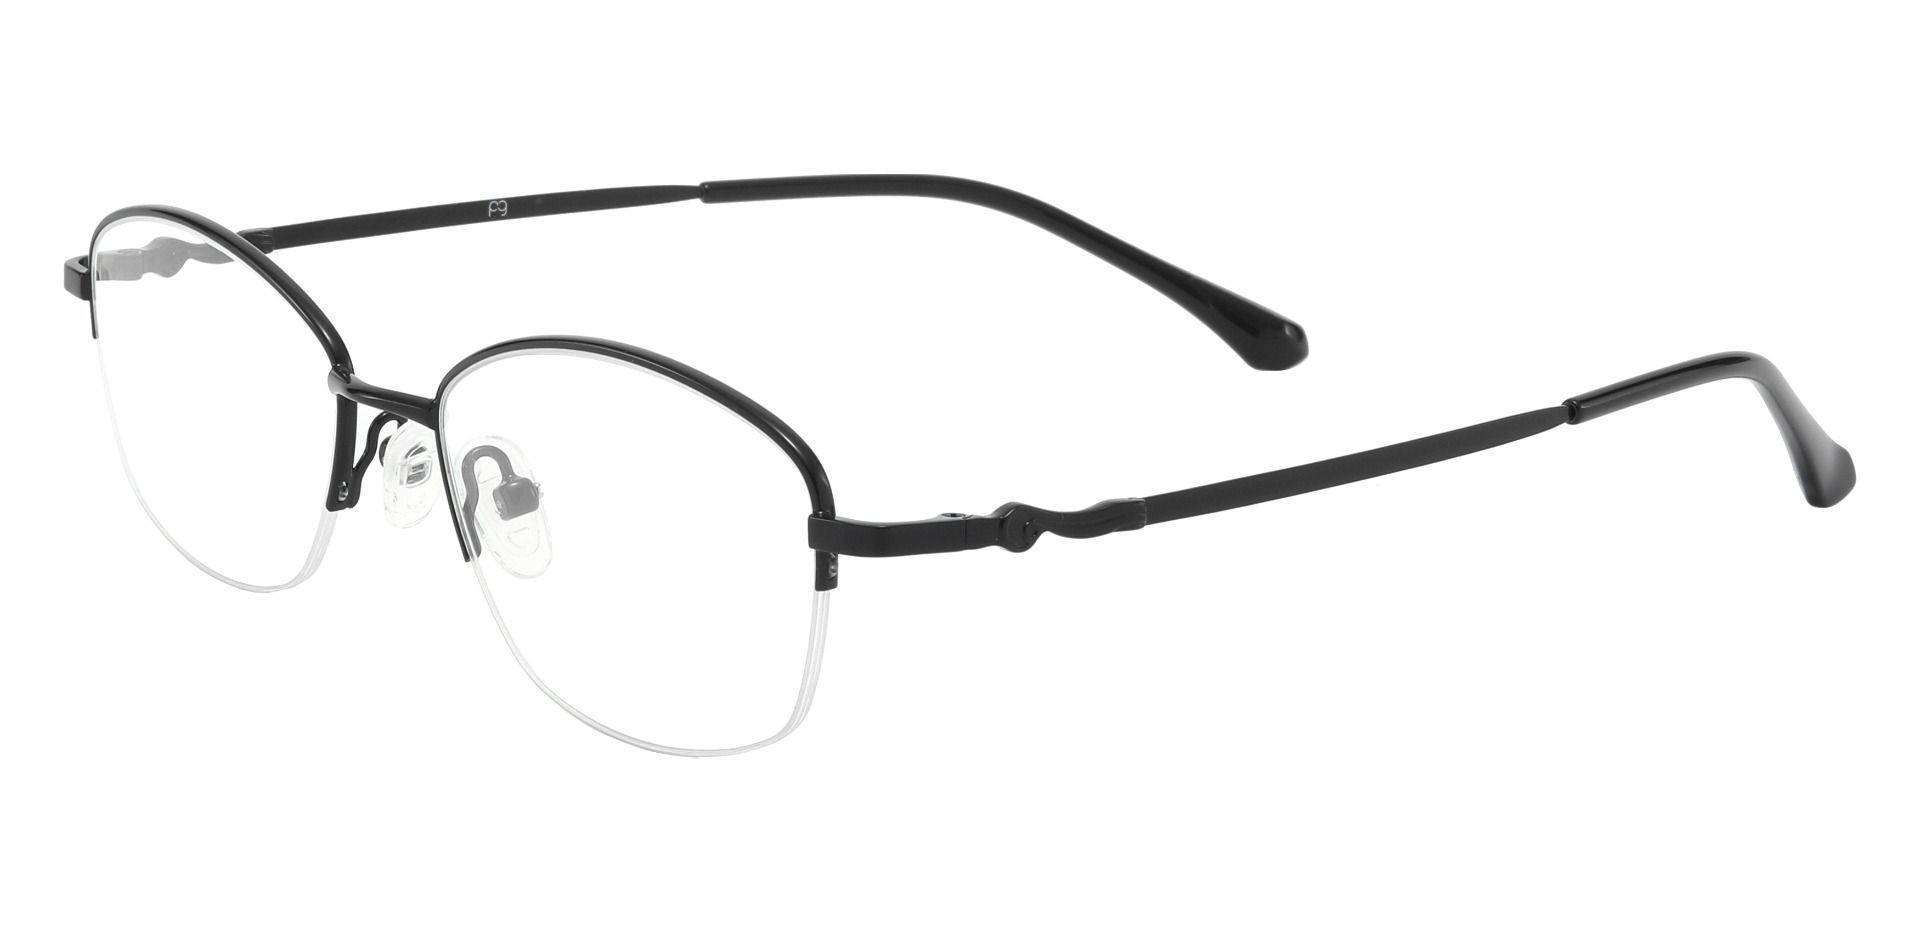 Beulah Oval Eyeglasses Frame - Black